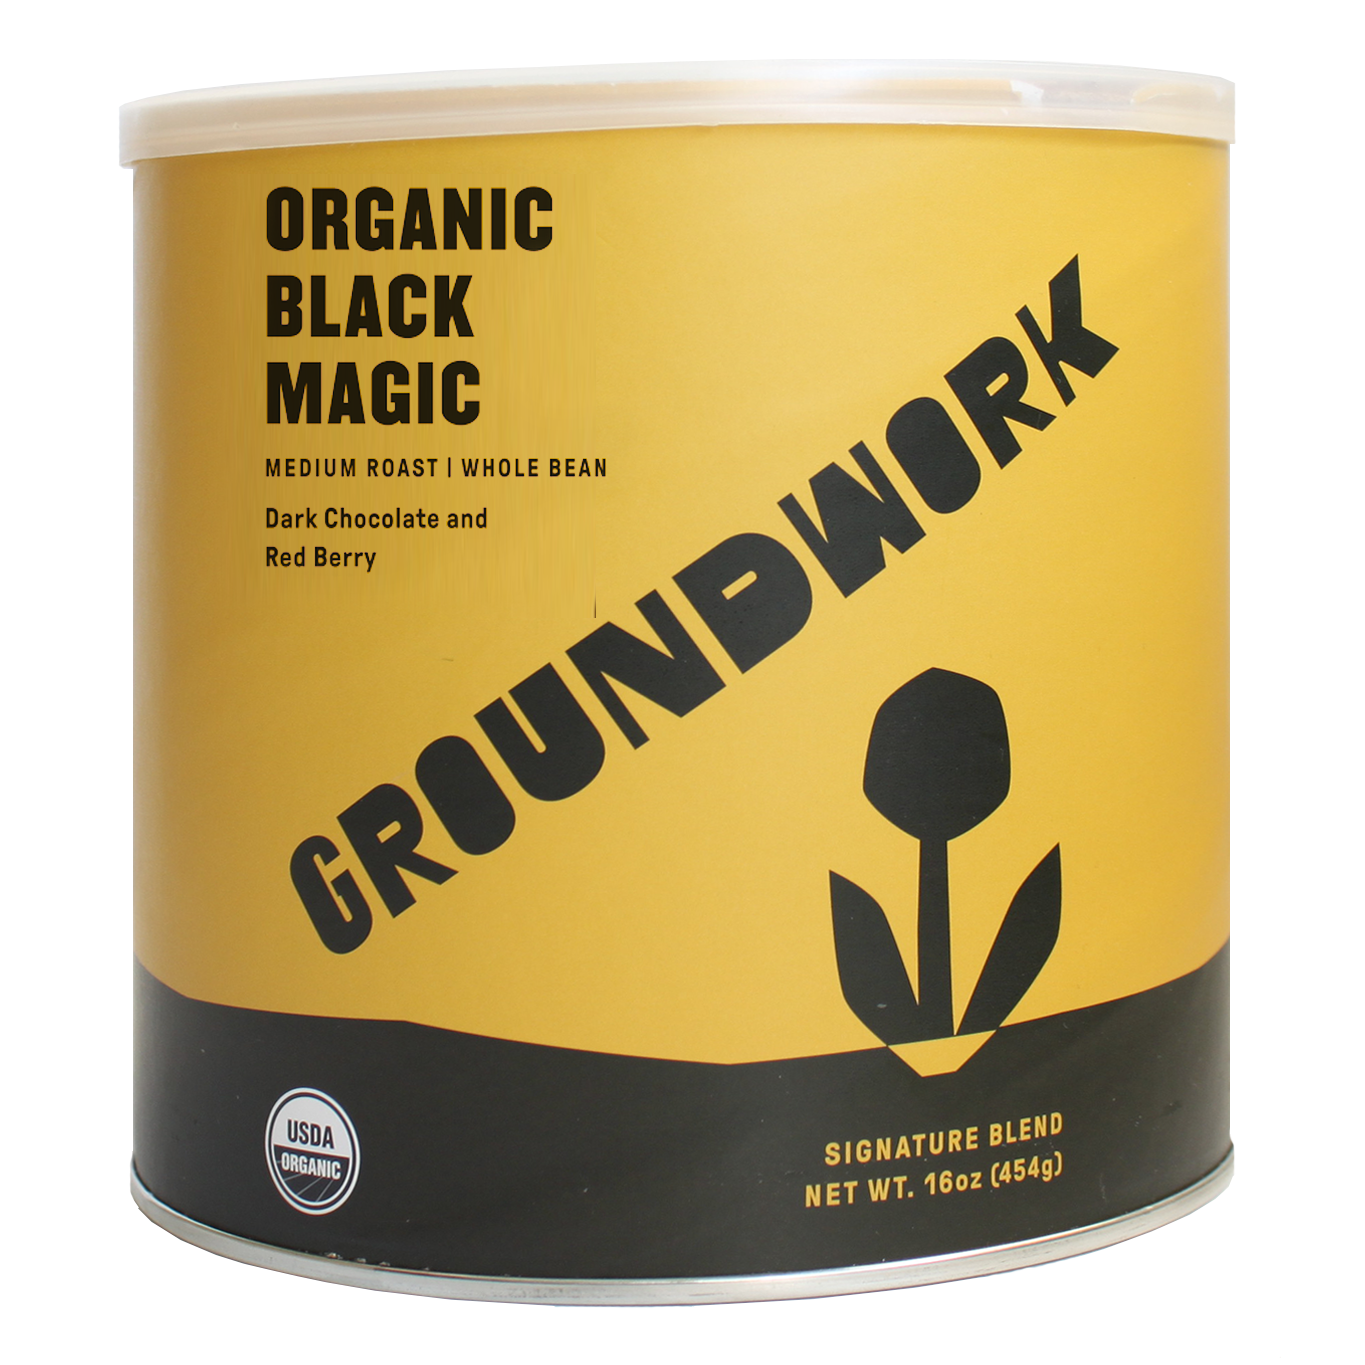 1 lb can of Organic Black Magic Medium Roast 